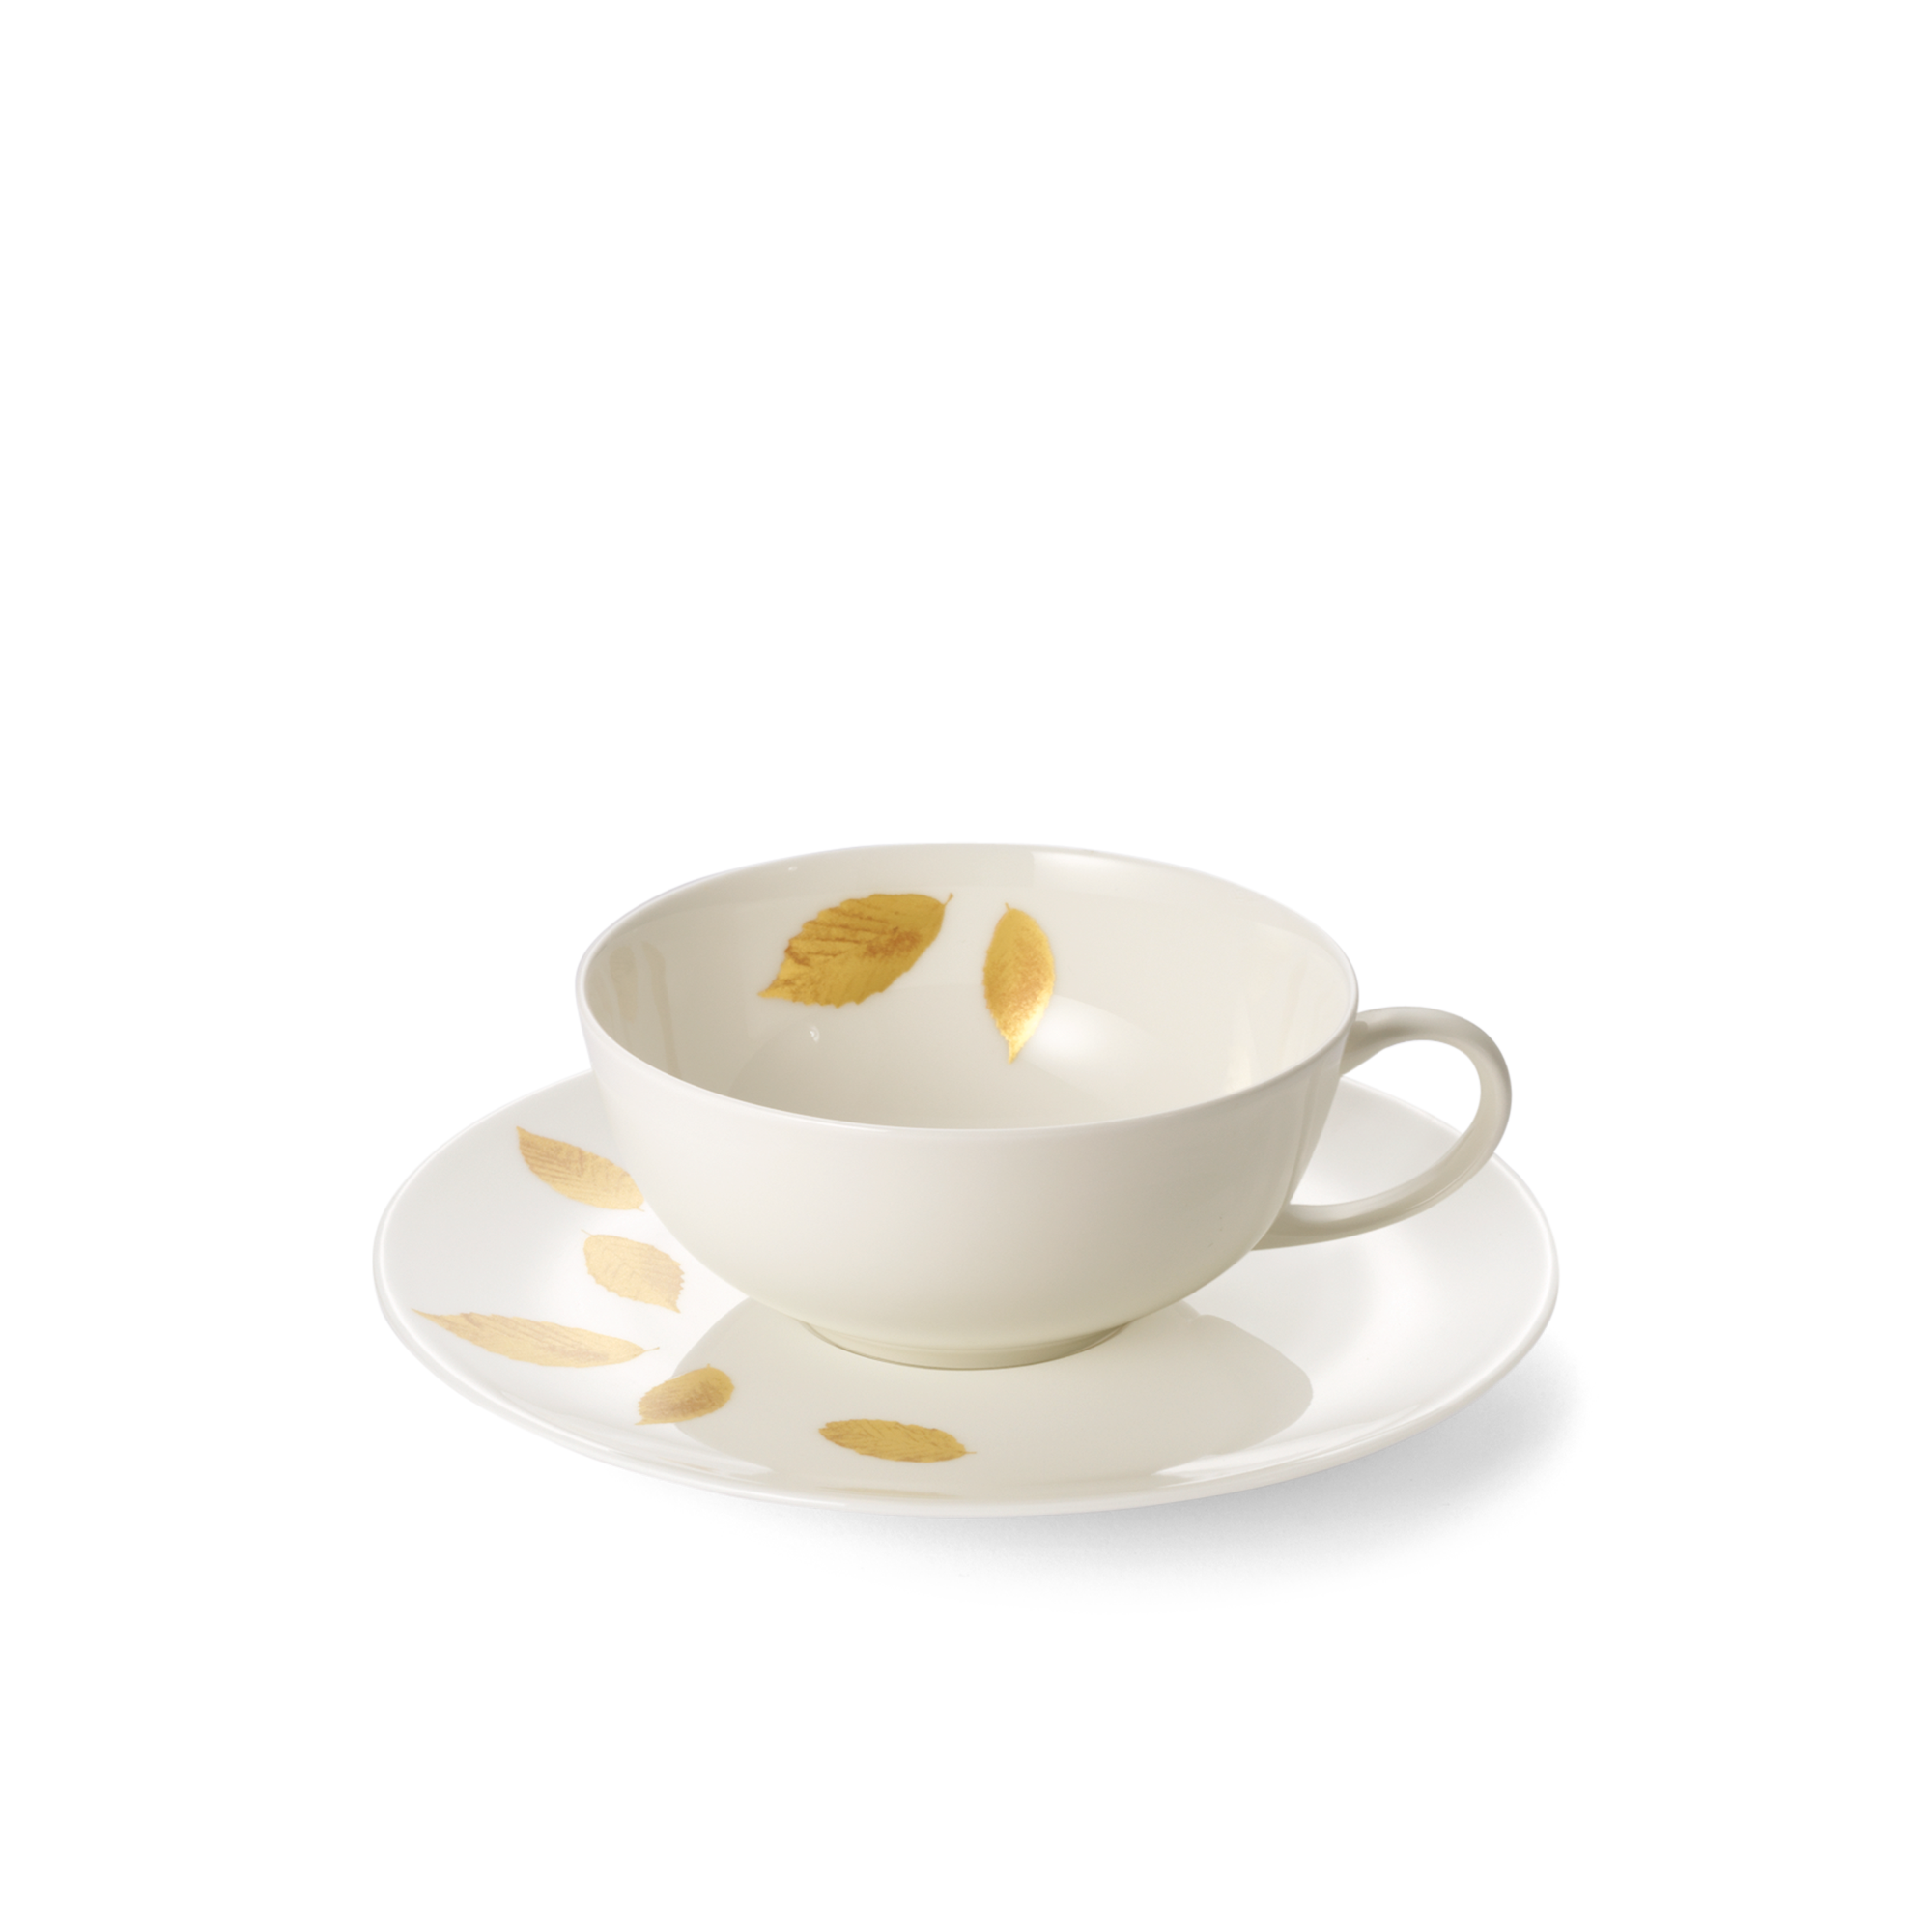 Gold Leaf teacup